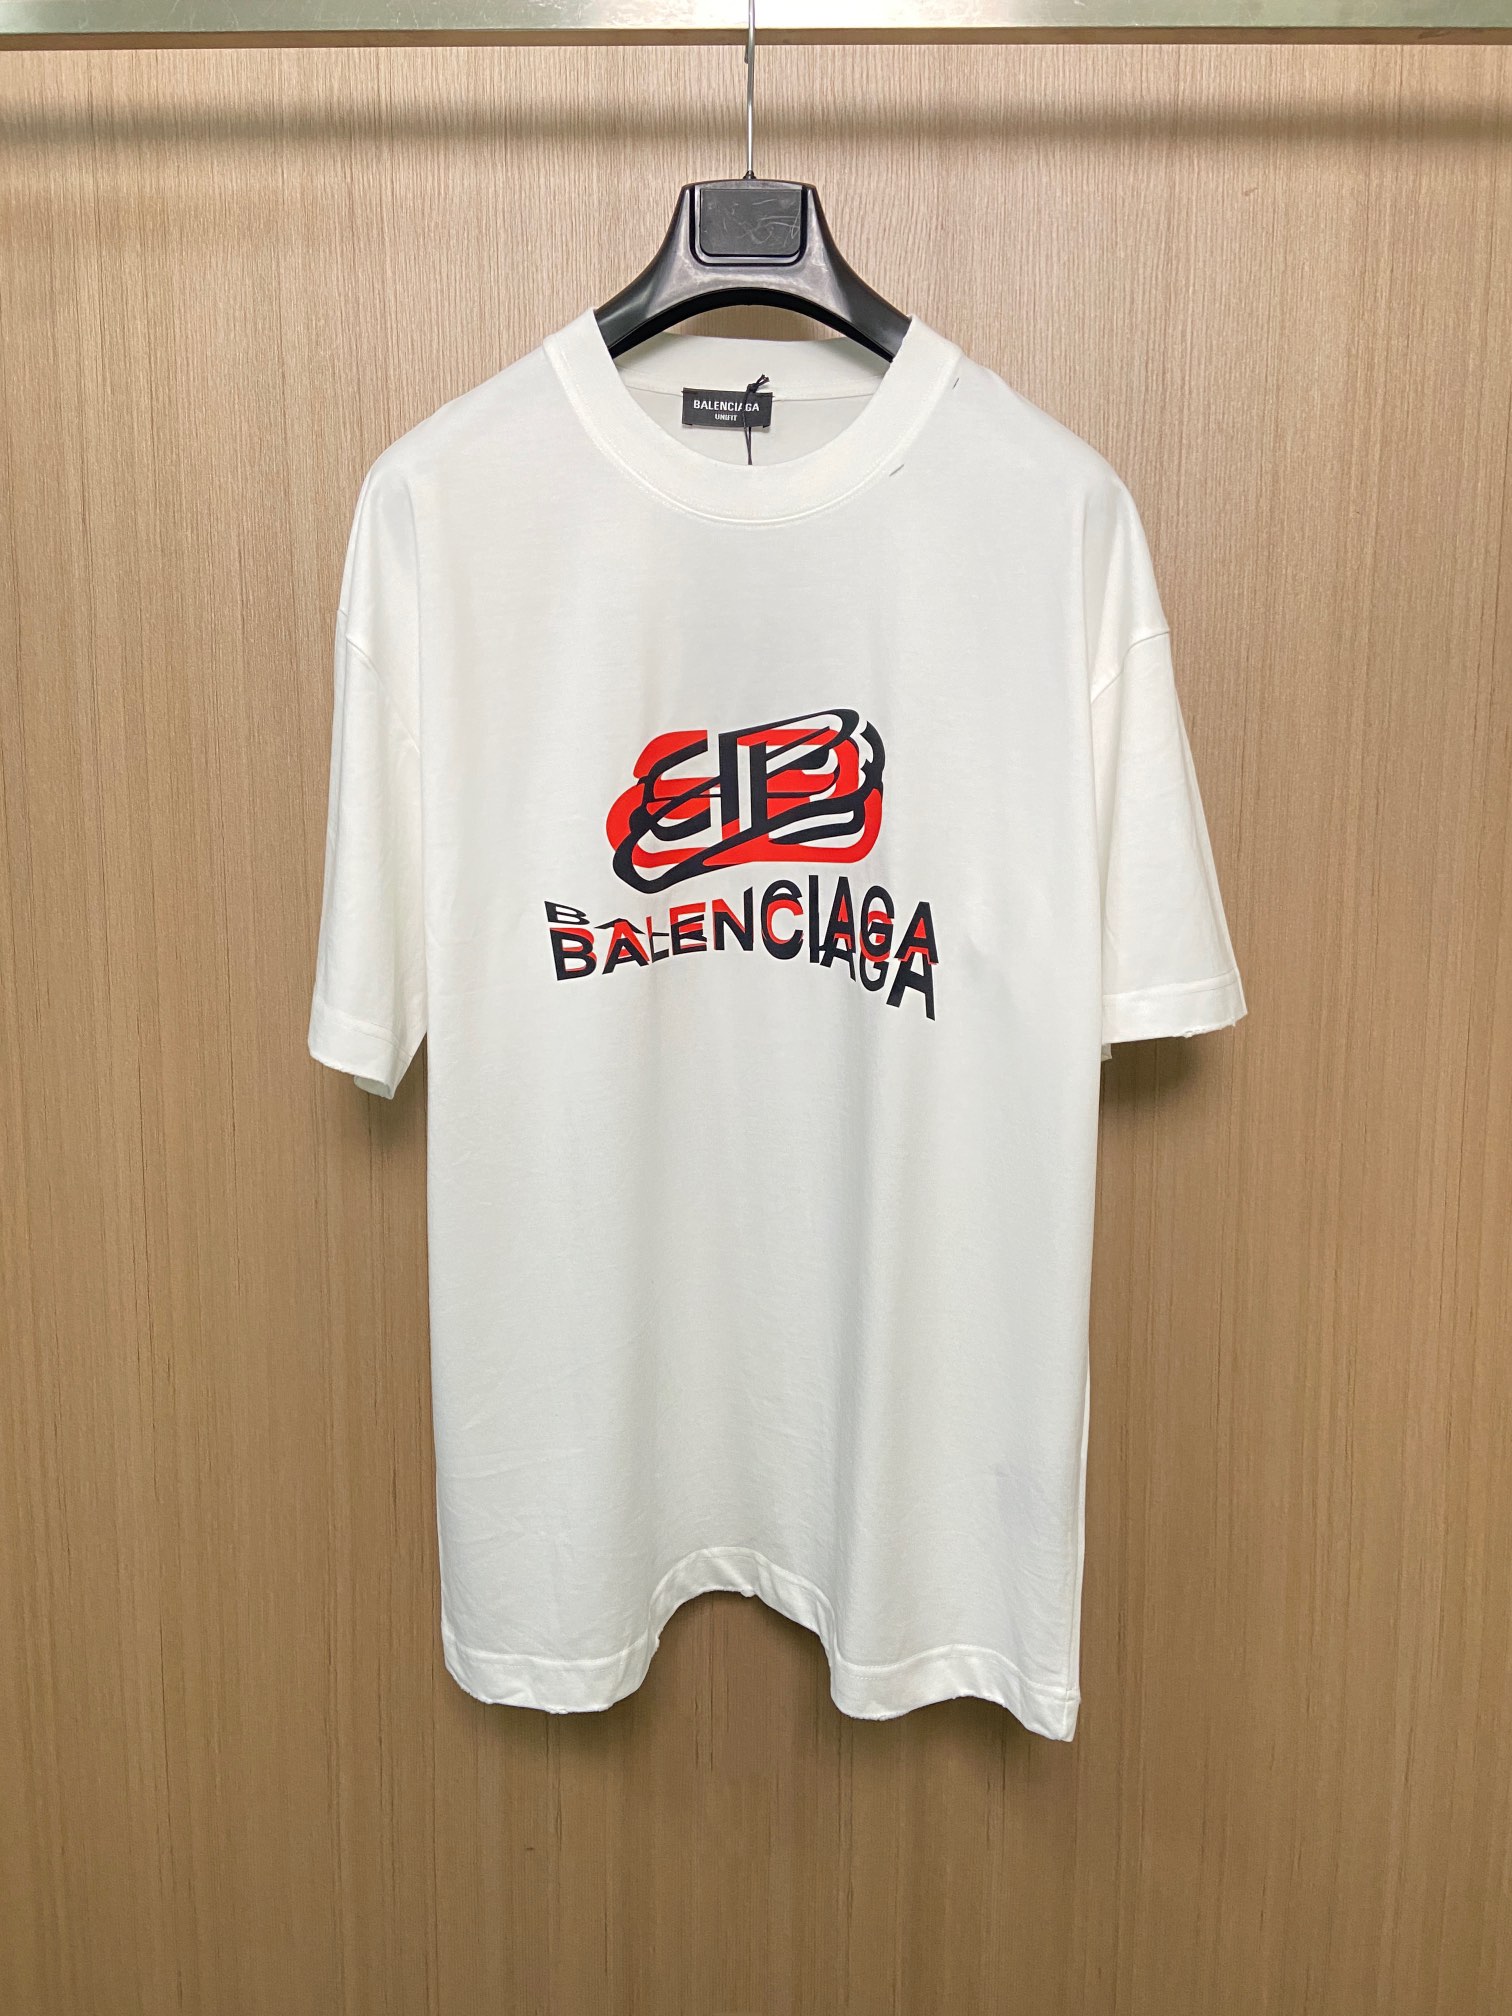 Balenciaga Clothing T-Shirt Wholesale China
 Black White Printing Unisex